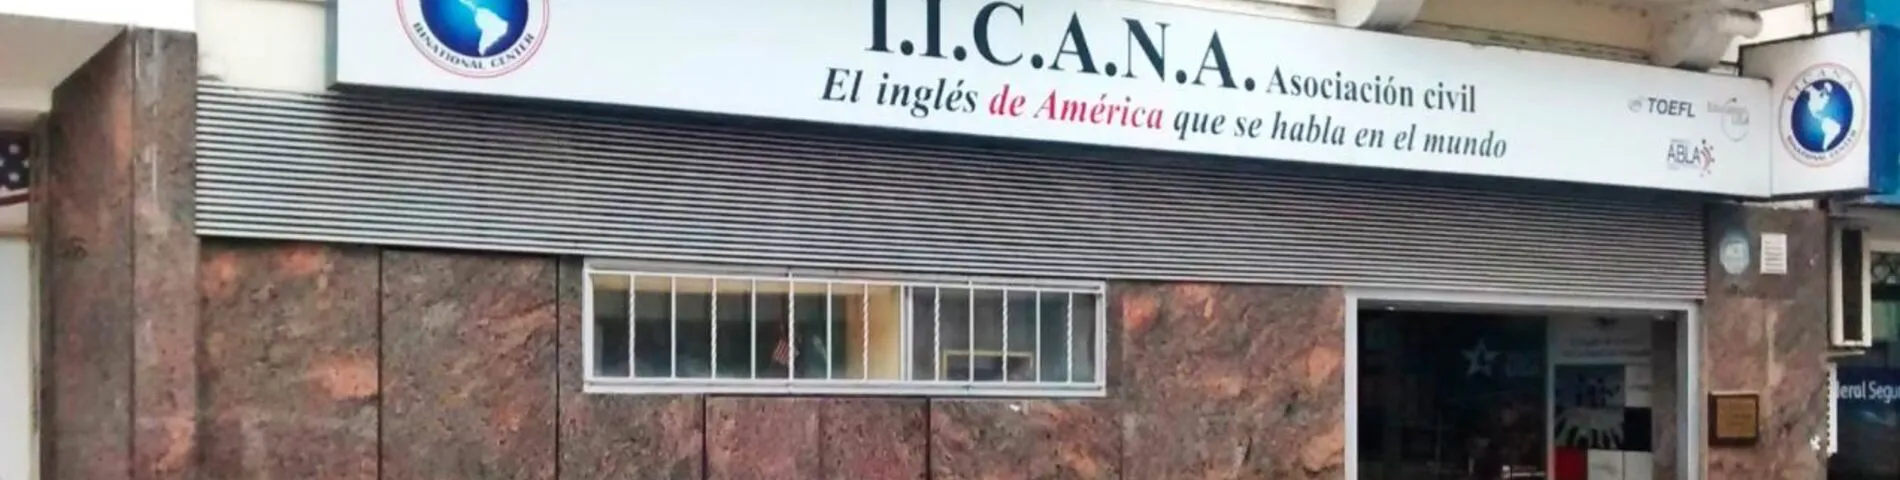 IICANA - Instituto de Intercambio Cultural Argentino Norteamericano зображення 1